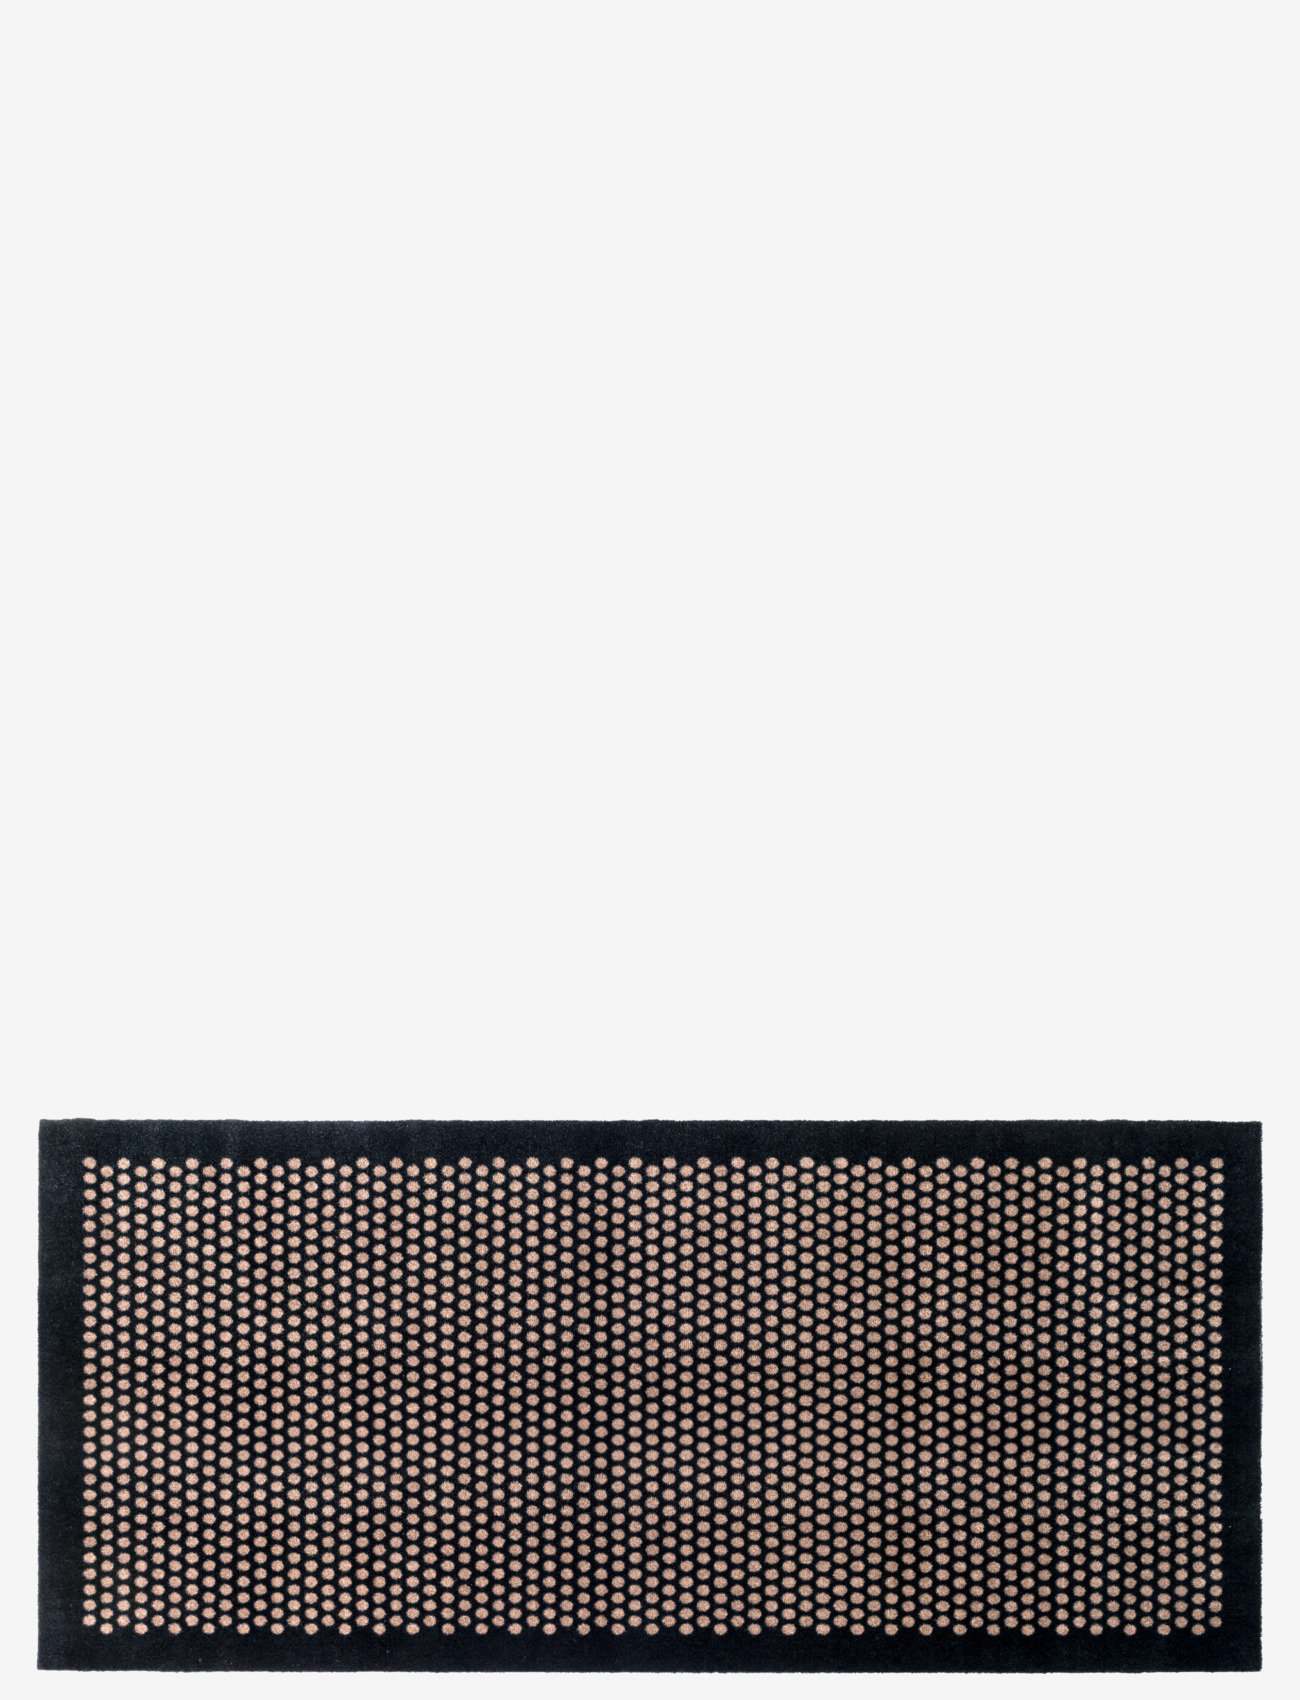 tica copenhagen - Floormat polyamide, 200x90 cm, dot design - hallway runners - black/beige - 0